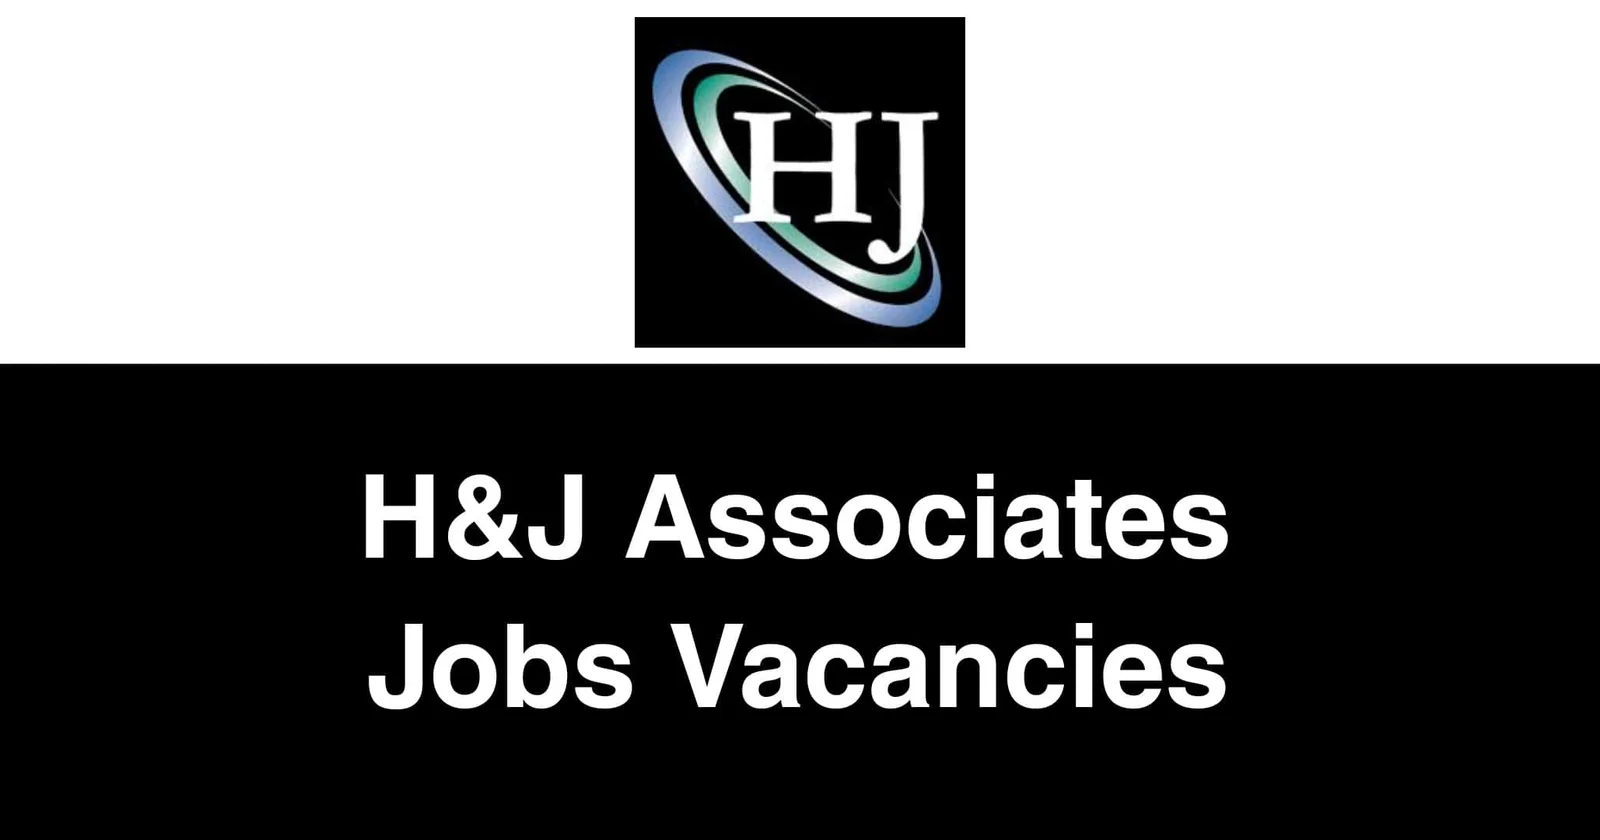 H & J Associates Jobs Vacancies